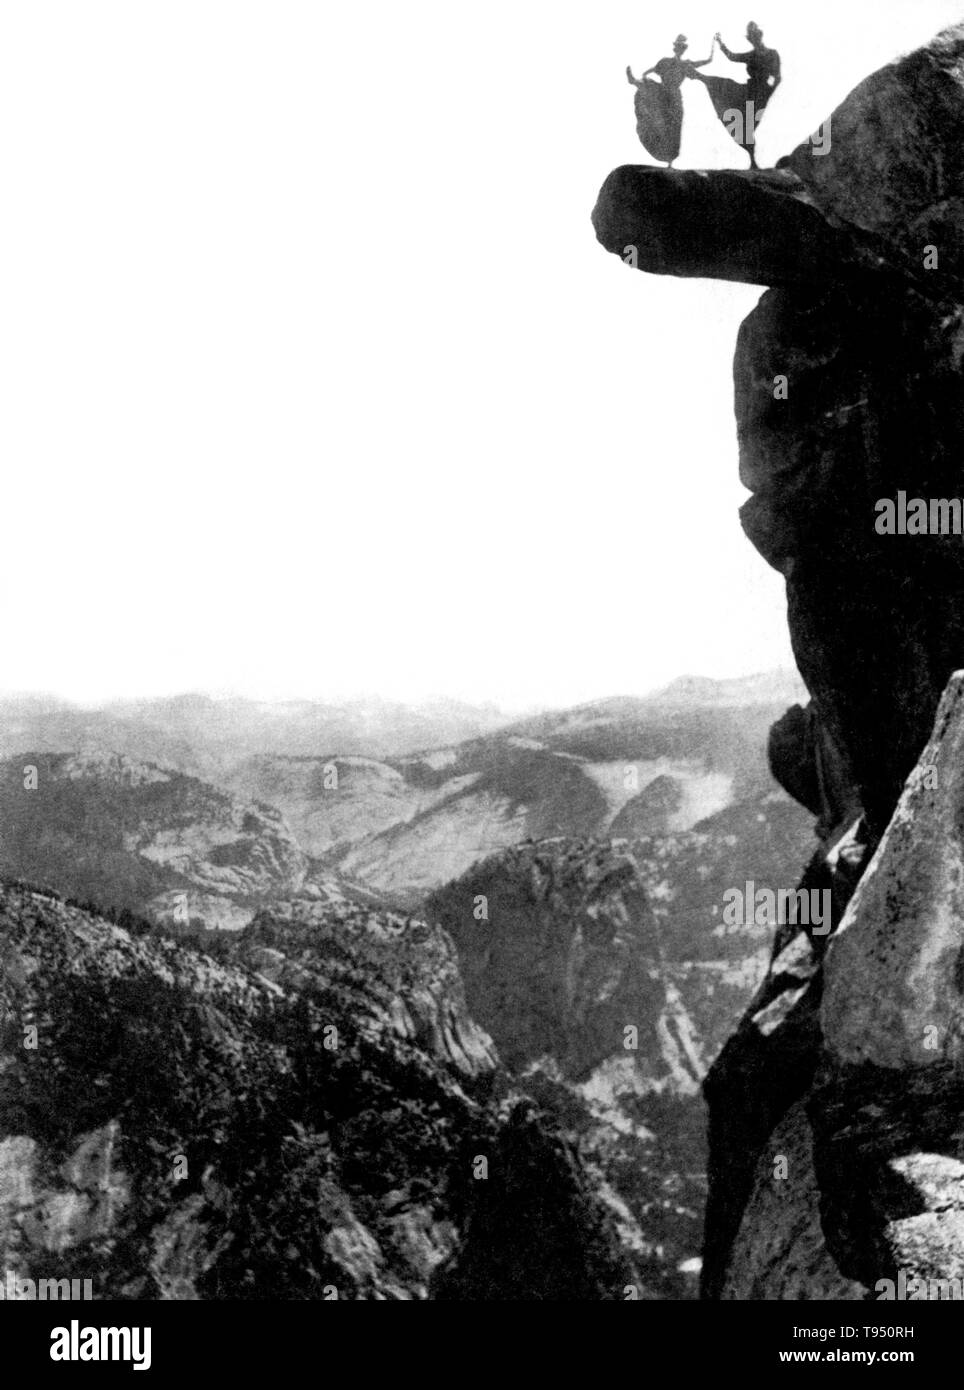 Due giovani donne calci loro talloni fino in cima al ghiacciaio Punto. Le donne sono state Kitty Tatch e Katherine Hazelston, cameriere a Yosemite National Park Hotel. Glacier Point è un punto di vista sopra la valle di Yosemite in California, Stati Uniti. Si trova sulla parete sud della valle di Yosemite, ad un'altitudine di 7,214 piedi. Il punto offre una vista superba di diversi di Yosemite National Park sono ben conosciuti segni distintivi della città tra cui il Parco Nazionale di Yosemite Valley, Yosemite Falls, Half Dome, caduta primaverile, Nevada Fall, e nuvole di riposo. Fotografato da George Fiske, 1890. Foto Stock